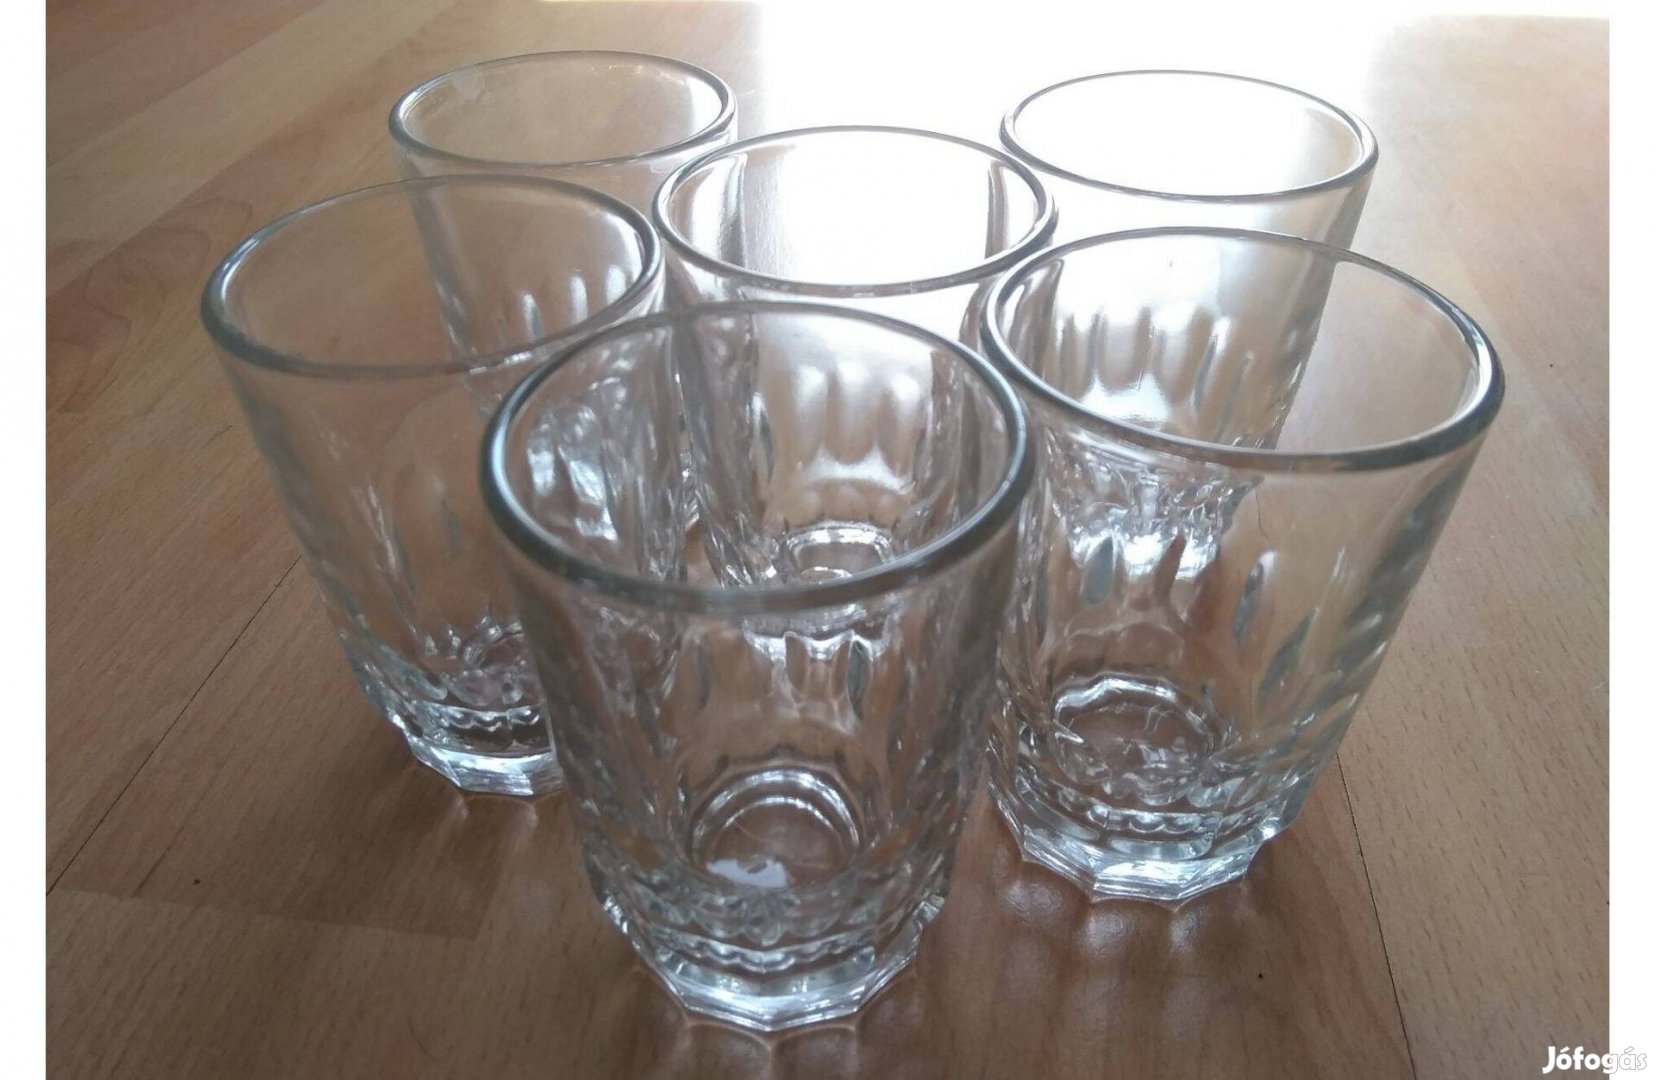 Üvegpohár készlet üdítős vizes üveg pohár vastagfalú